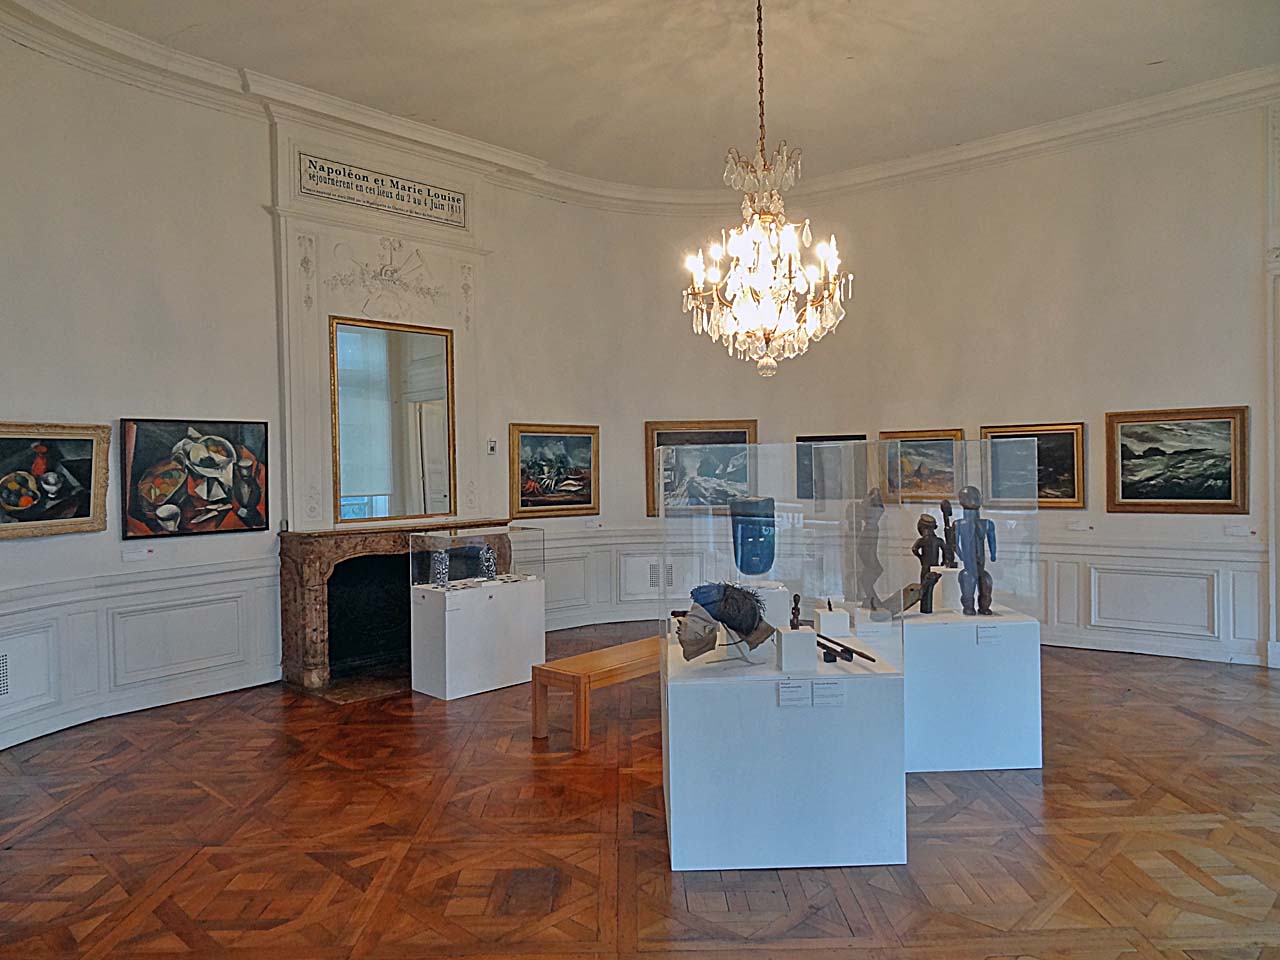 Musée des Beaux-Arts de Chartres